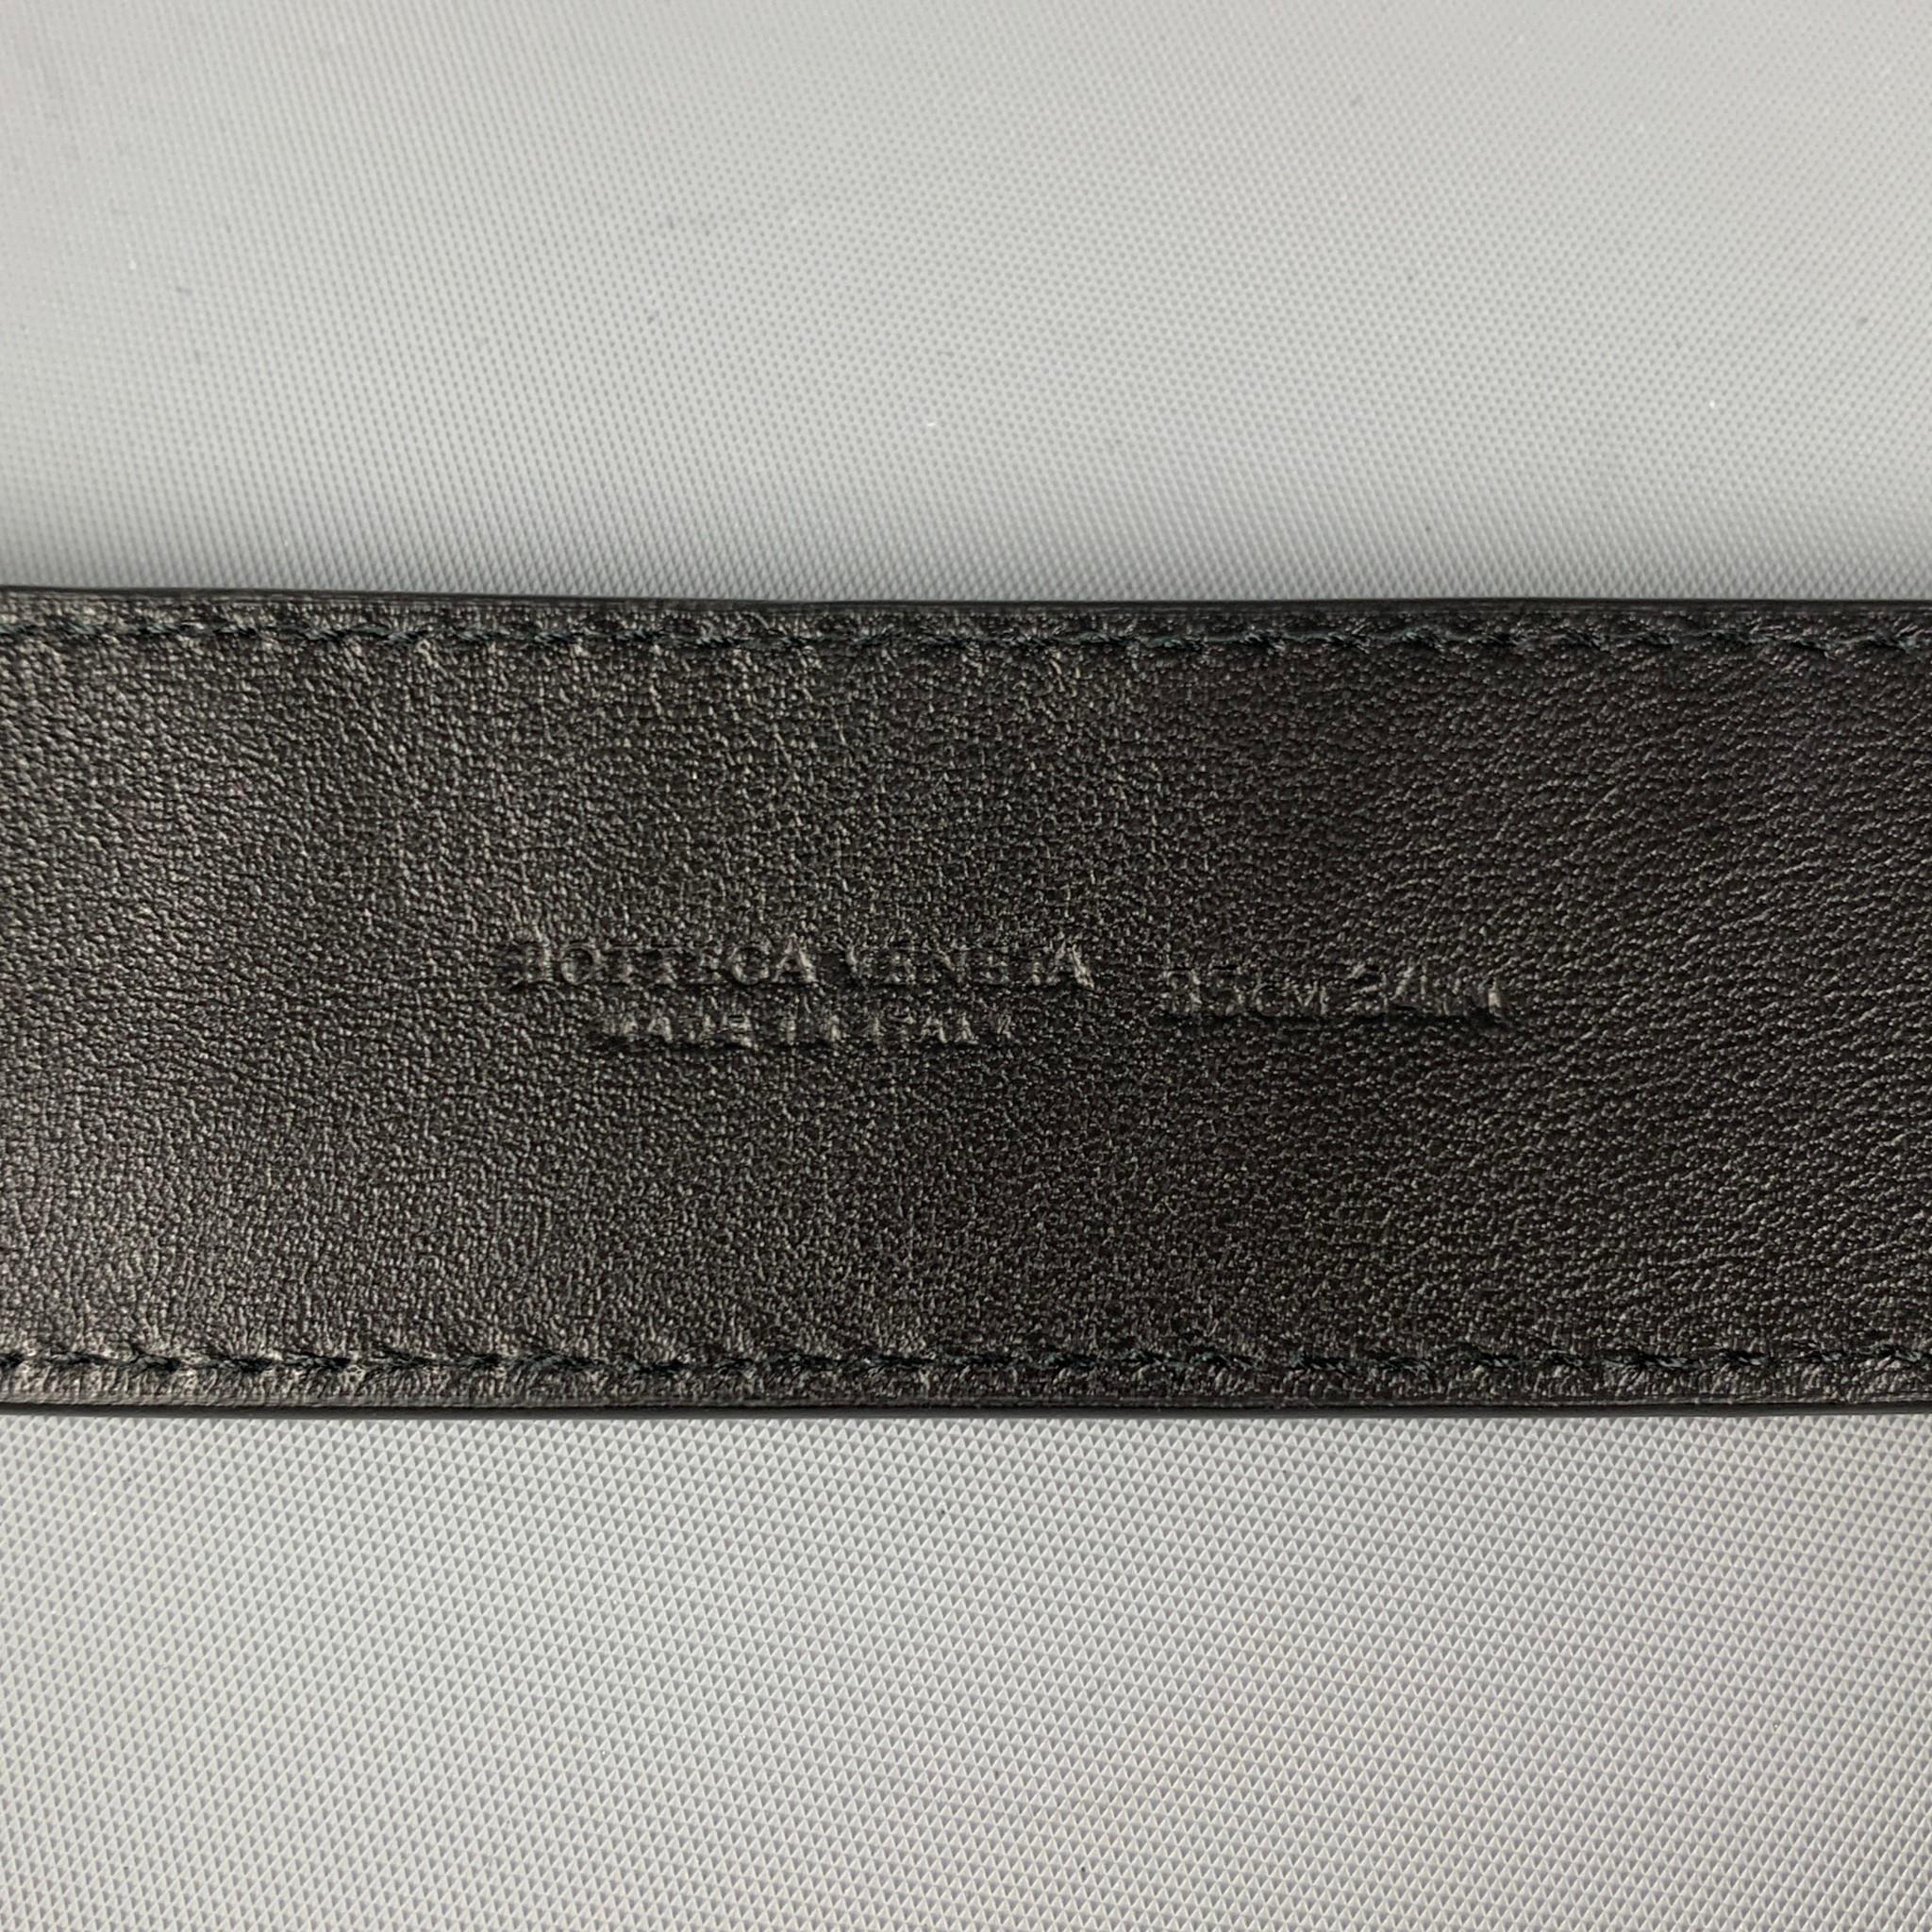 Men's BOTTEGA VENETA Size 34 Black Red White Woven Leather Belt